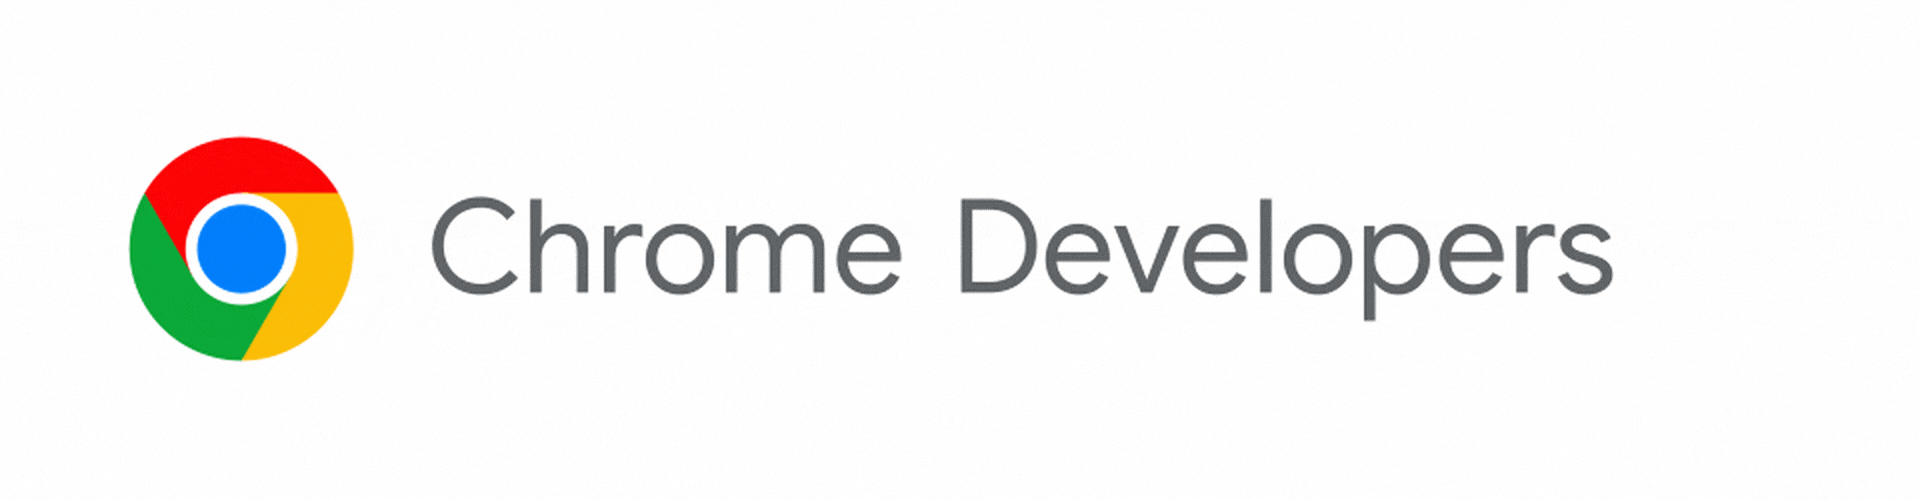 Chrome Developers का लोगो, अब &#39;डेवलपर के लिए Chrome&#39; में बदल रहा है.